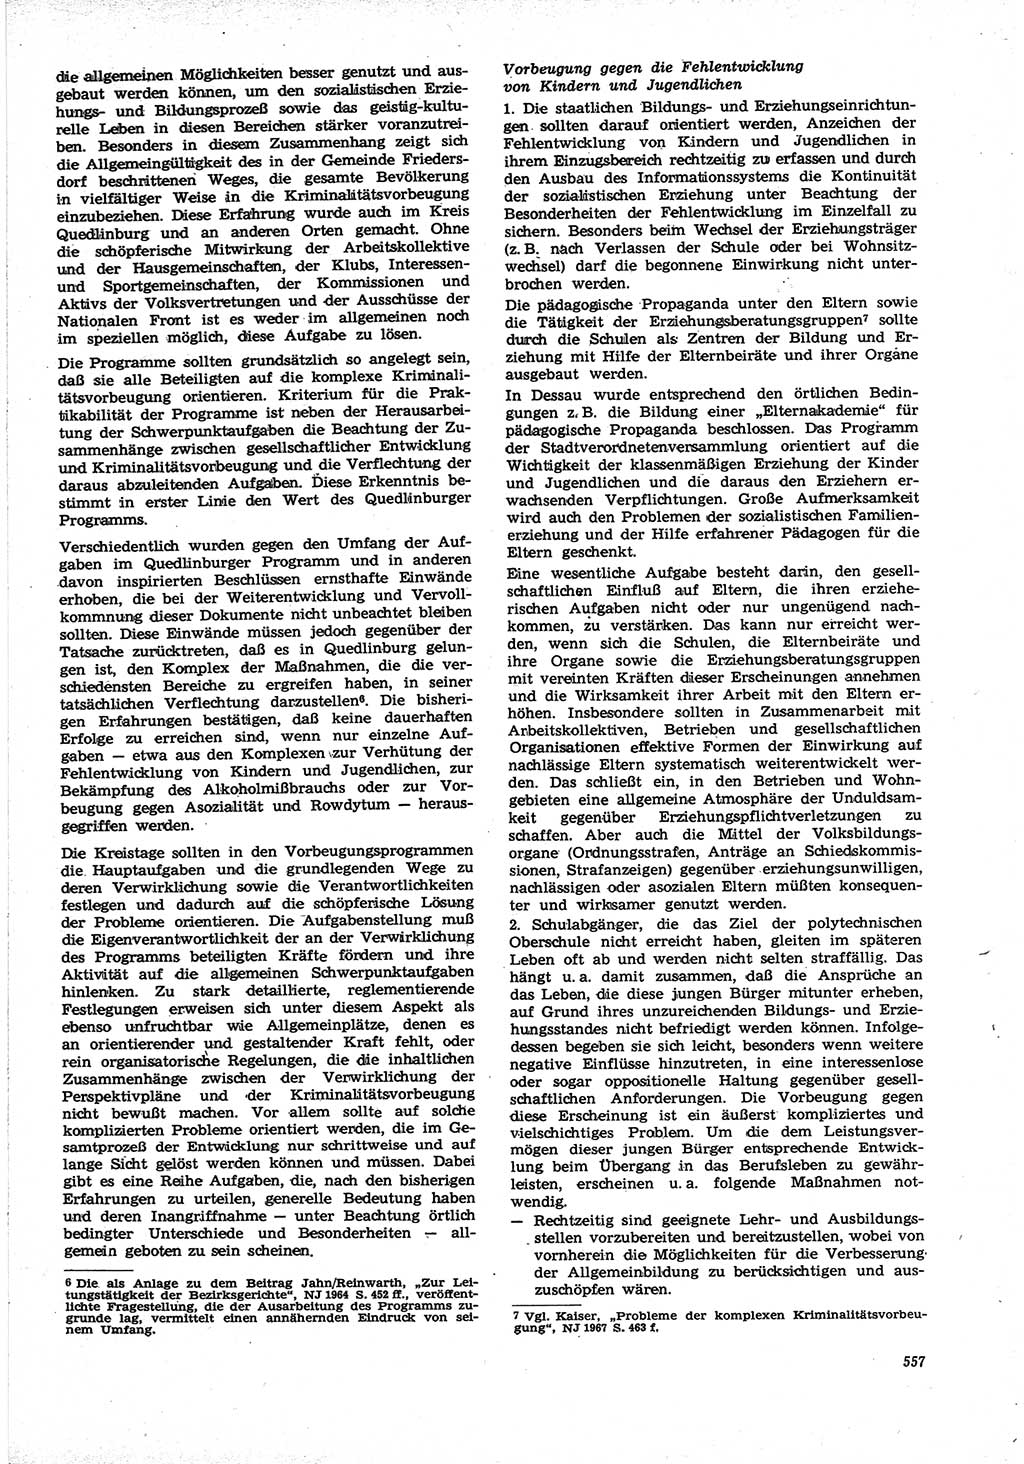 Neue Justiz (NJ), Zeitschrift für Recht und Rechtswissenschaft [Deutsche Demokratische Republik (DDR)], 21. Jahrgang 1967, Seite 557 (NJ DDR 1967, S. 557)